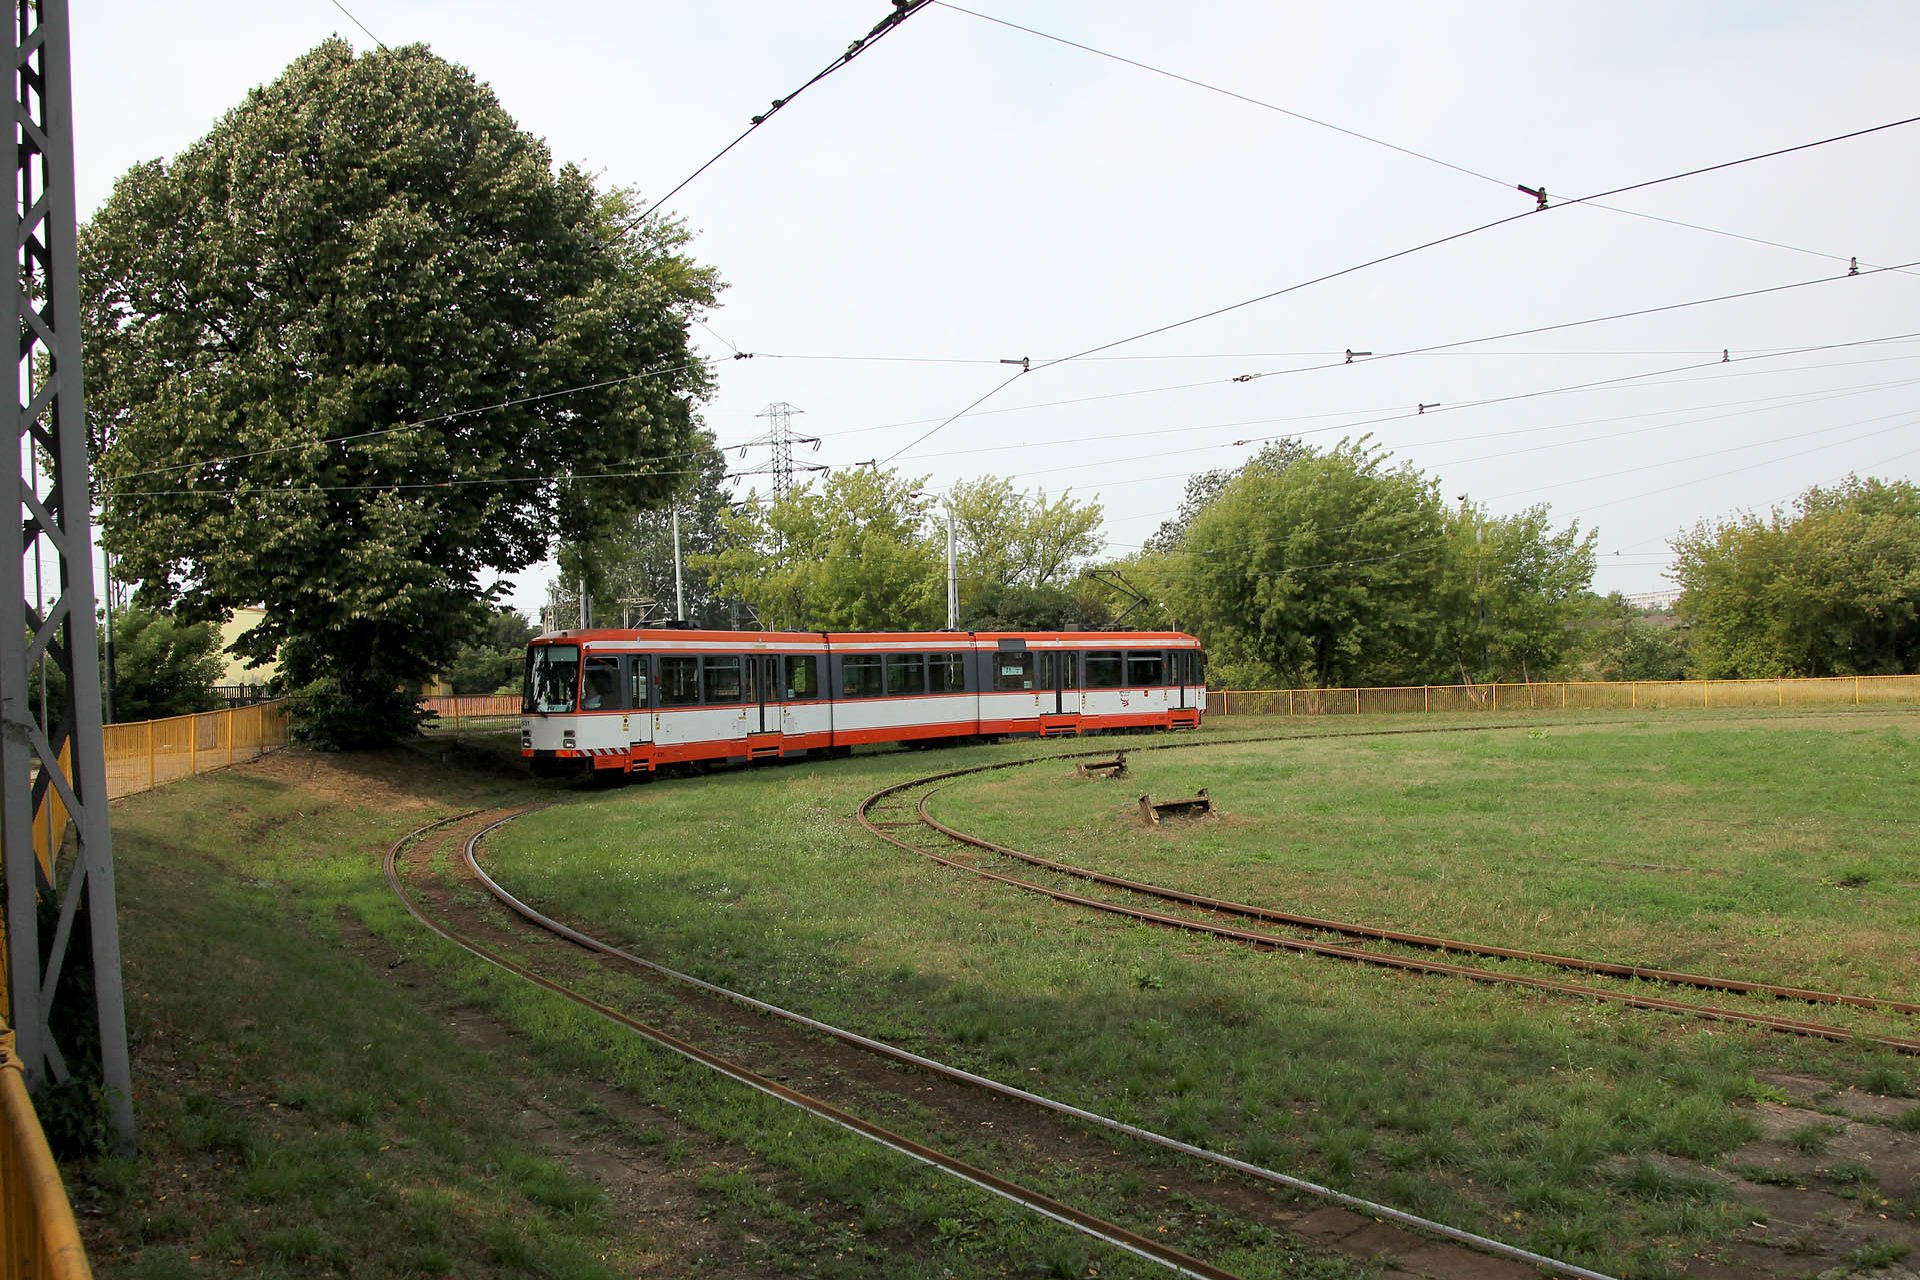 M8C 531 ex Bielefeld 2017 fahren wieder die Linen 1 und 7 hier, aber 2015 war hier die Linie Z1 unterwegs - Dworzec Łódź - Chojny. IN 2017 lines 1 and 7 run here again. In 2015 line Z1 ran here - Dworzec Łódź - Chojny